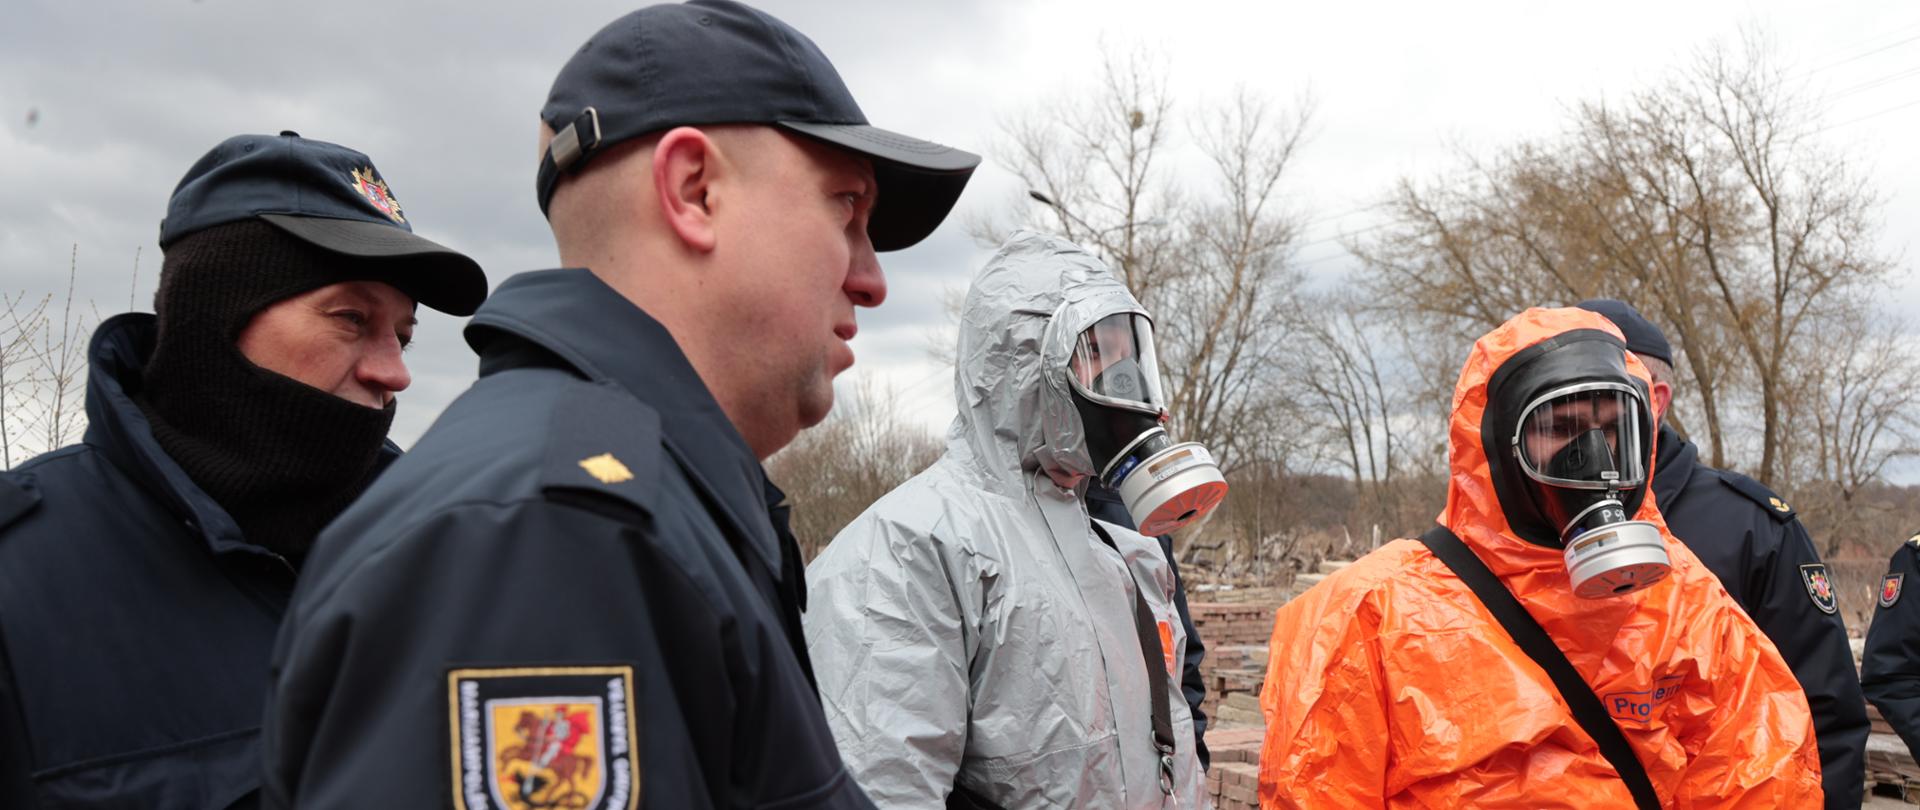 Dwóch ratowników chemicznym w ubraniu specjalnym w kolorze szarym i pomarańczowym oraz maskach z filtropochłaniaczami. Obok nich widoczni są litewscy strażacy w ubraniu sztabowym.